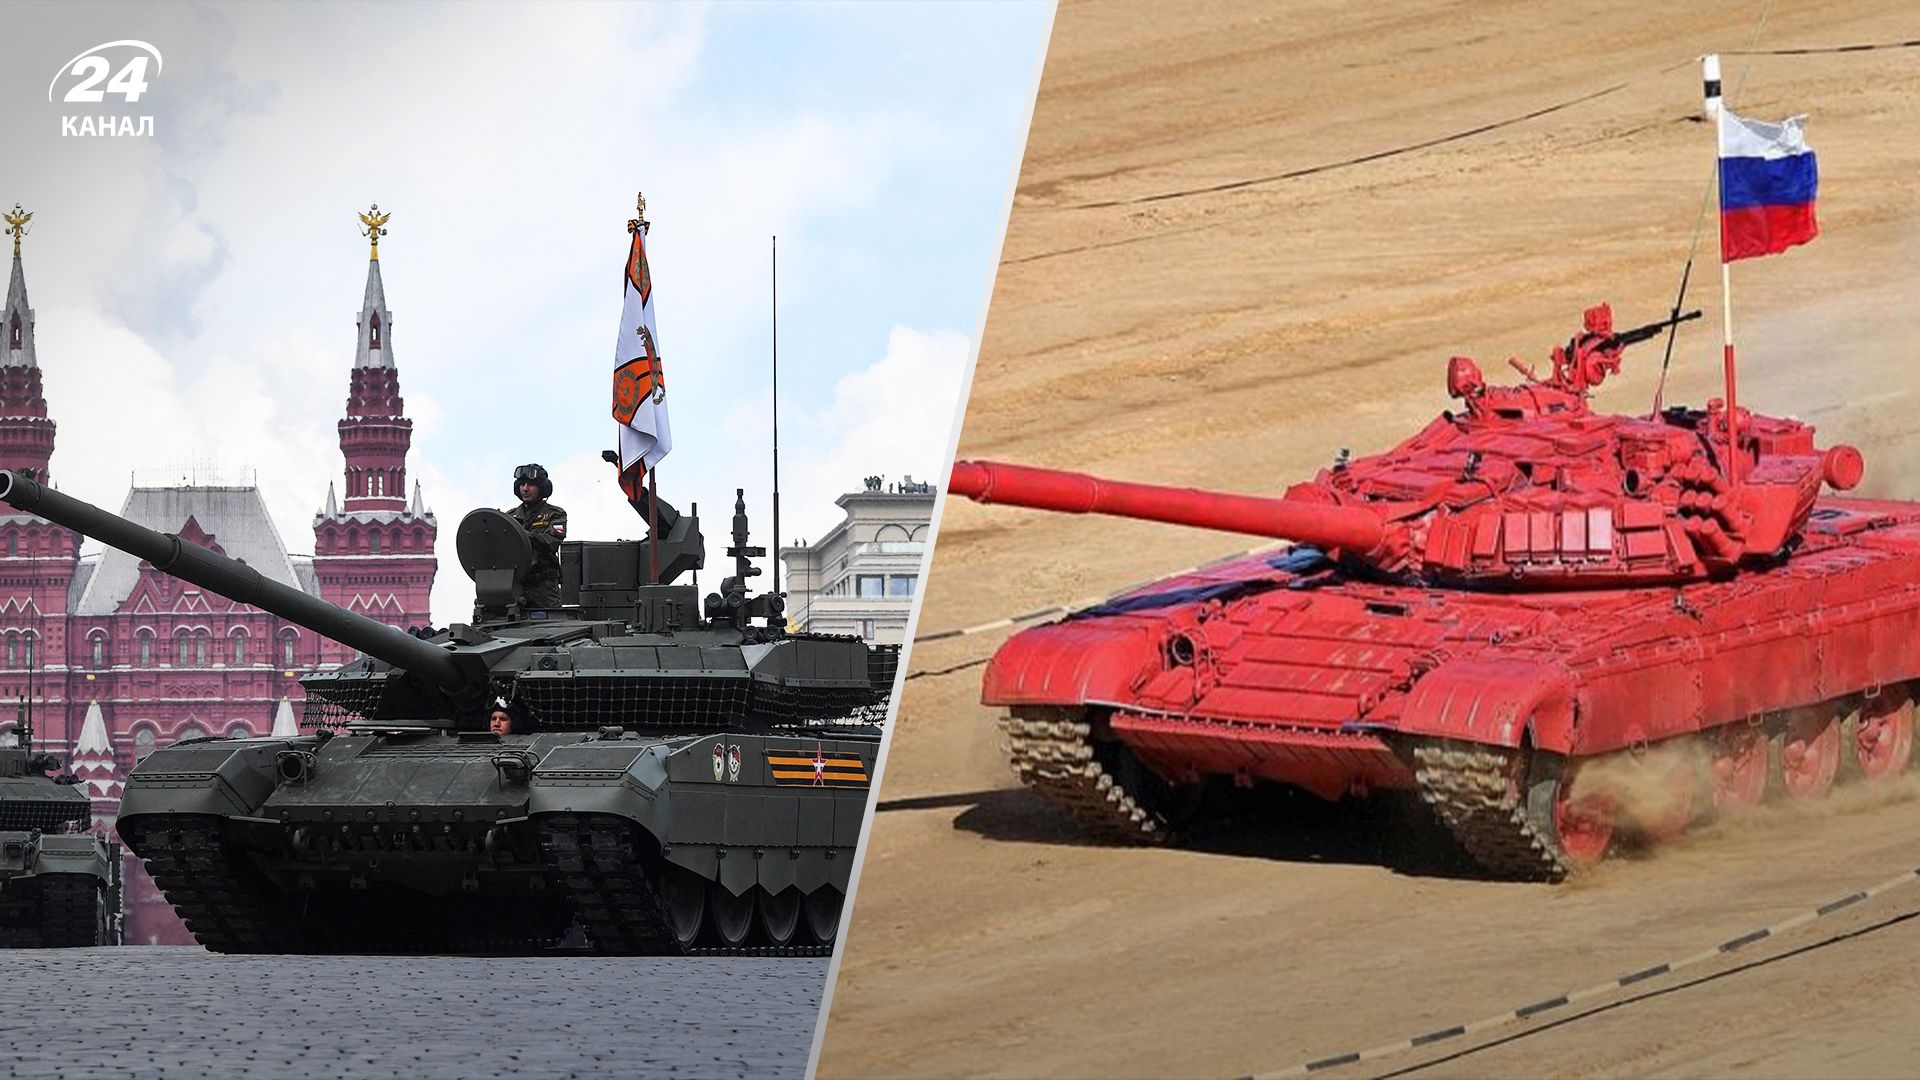 Британська розвідка пояснила скасування "танкового біатлону" в Росії другий рік поспіль - 24 Канал